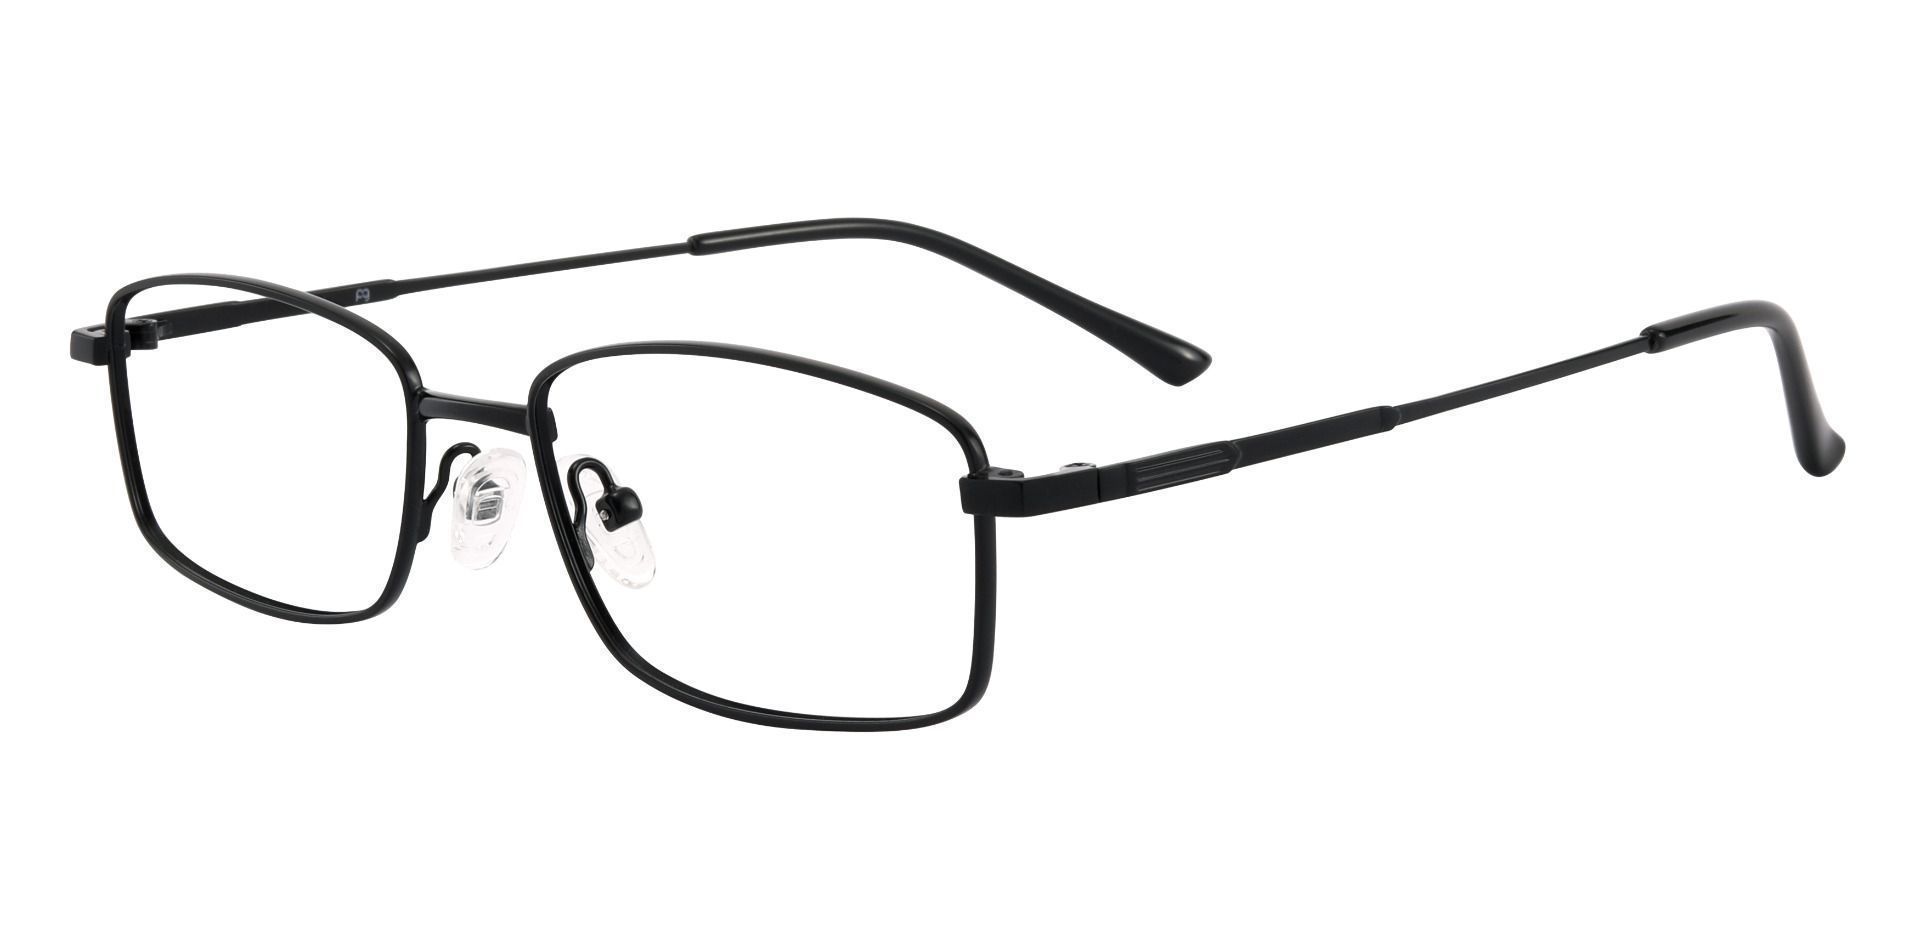 Fletcher Rectangle Lined Bifocal Glasses - Black